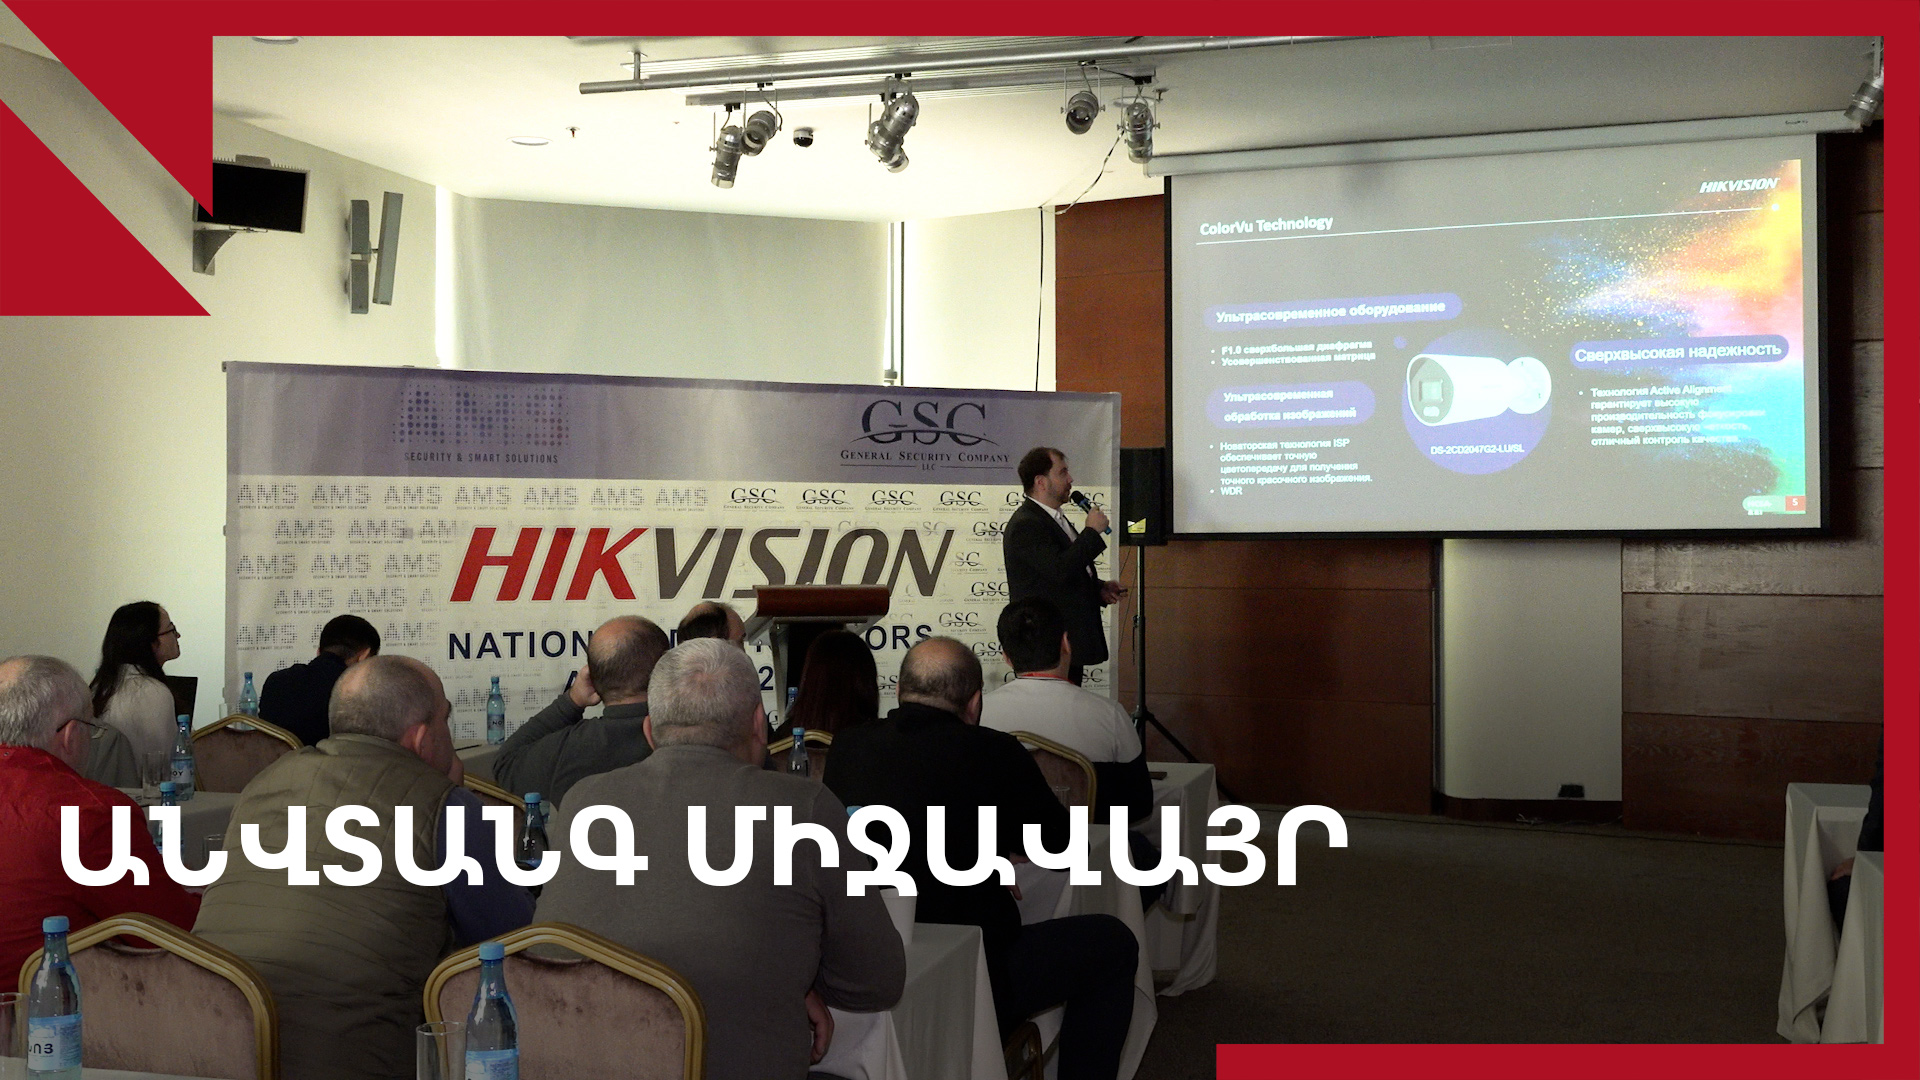 Համակարգեր՝ անվտանգ միջավայրի համար․ Hikvision-ի լուծումները